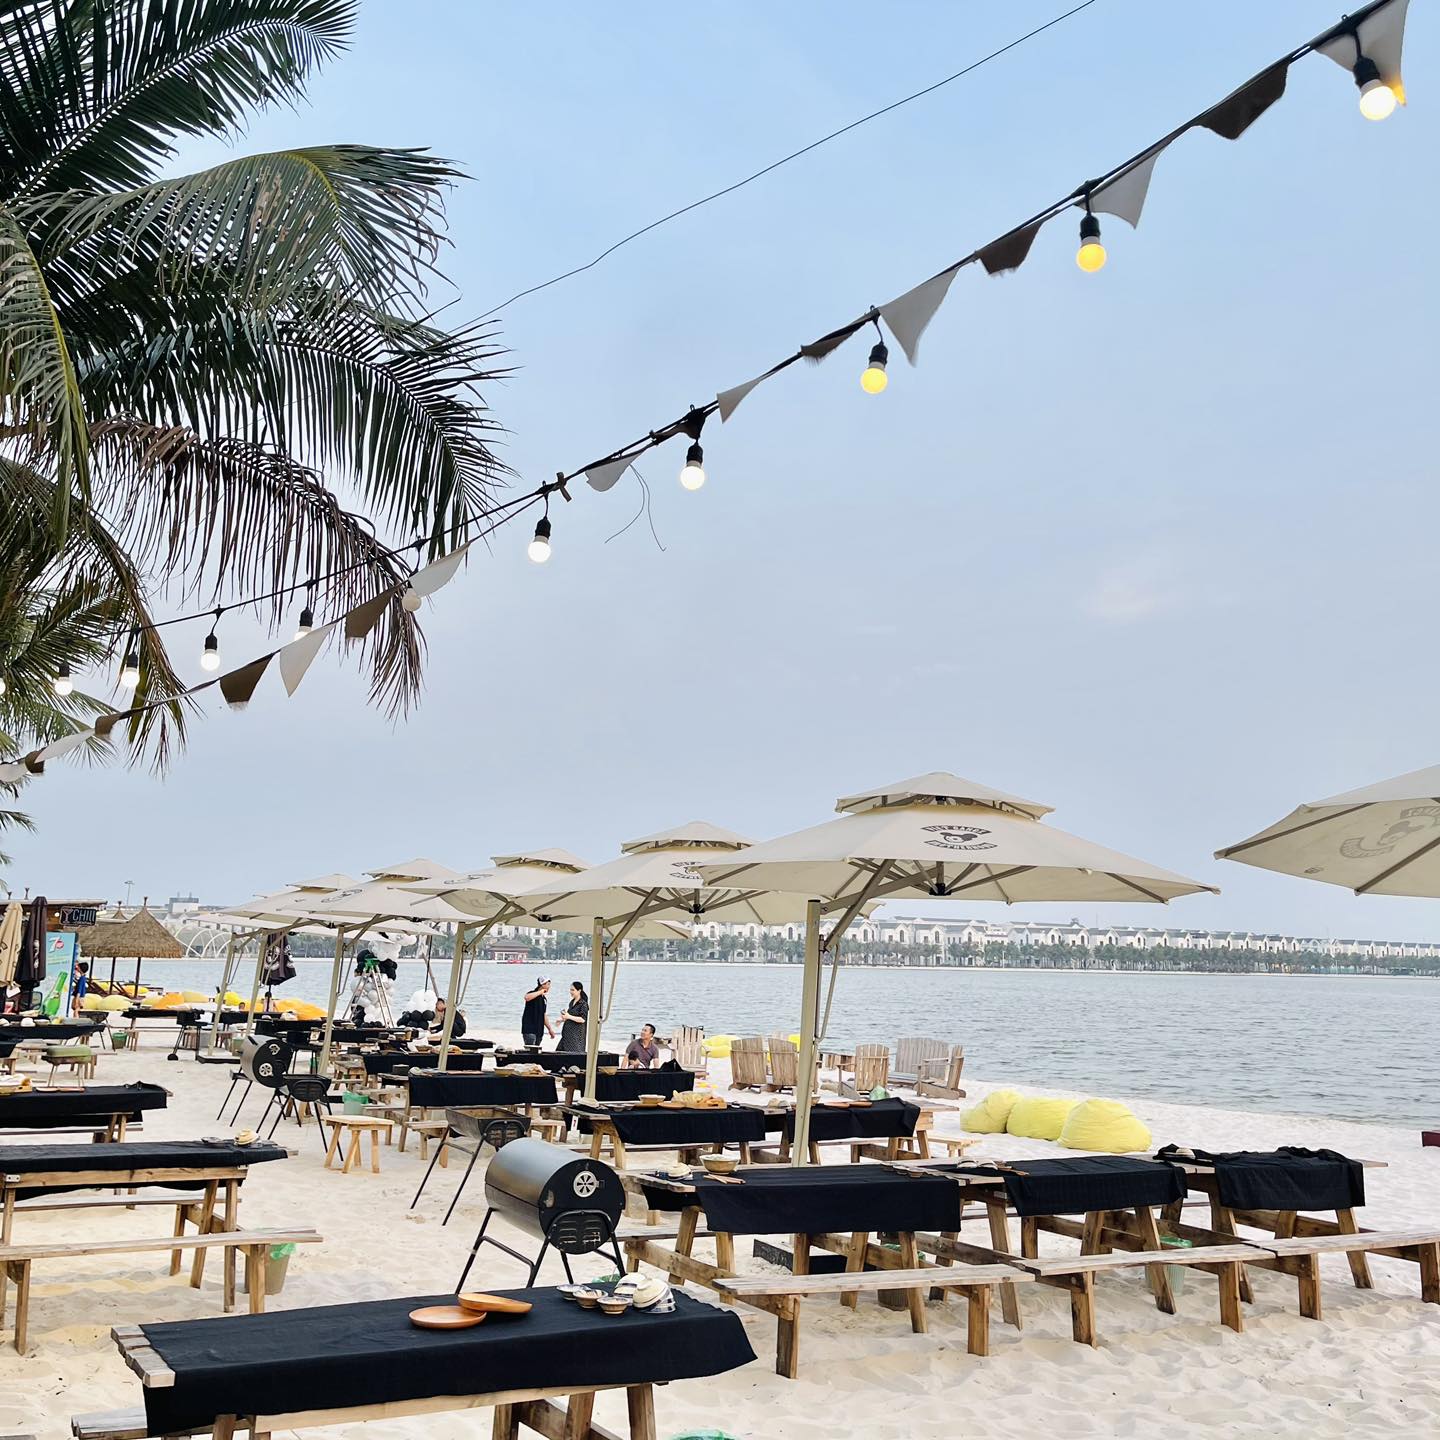 Vietgangz Beach Club Saigon - Bãi biển trong thành phố